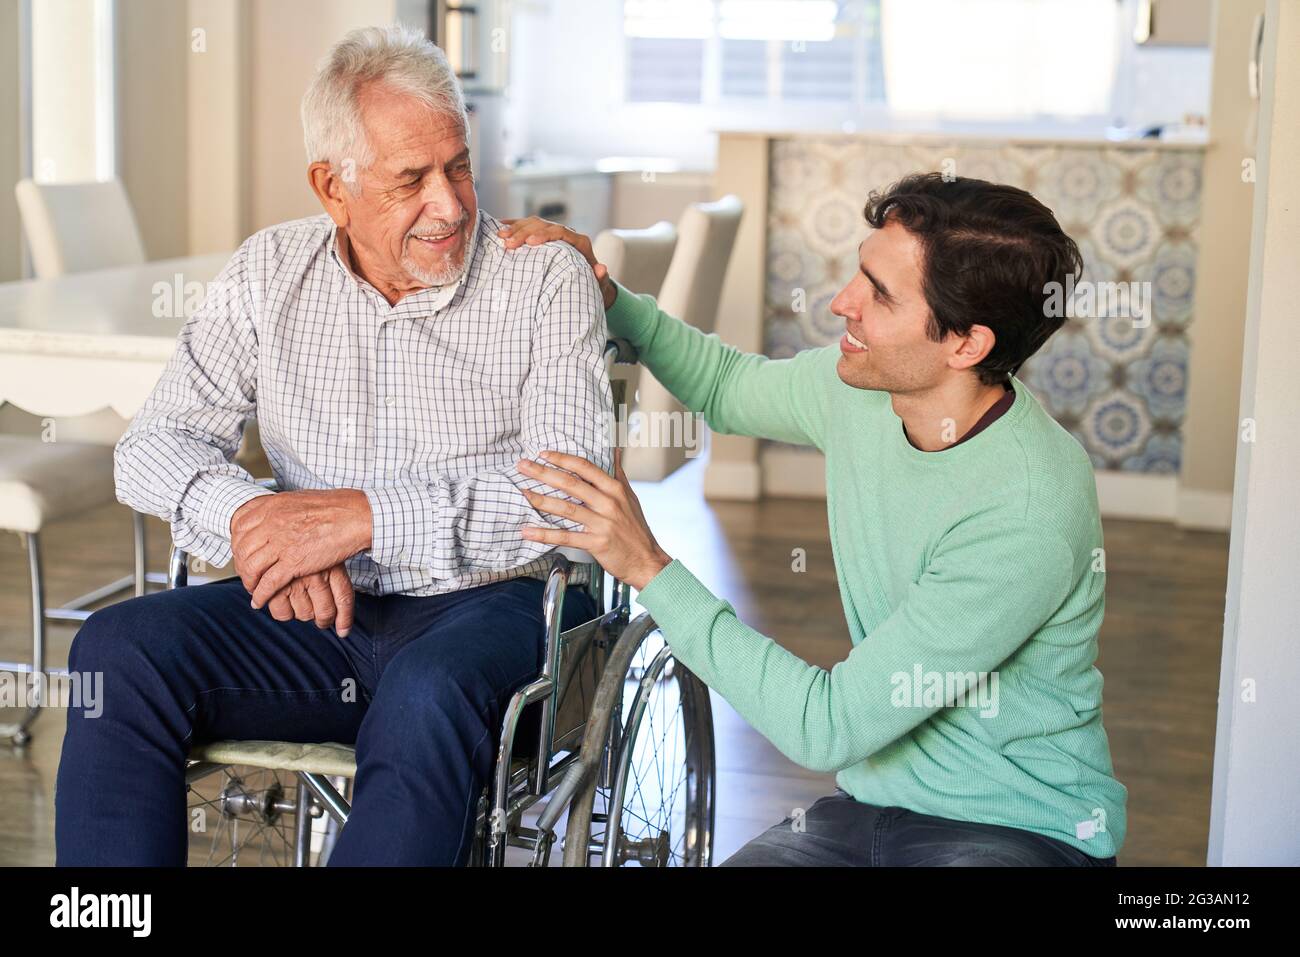 Uomo sorridente che si prende cura dell'uomo anziano in sedia a rotelle in progetto di vita assistita Foto Stock